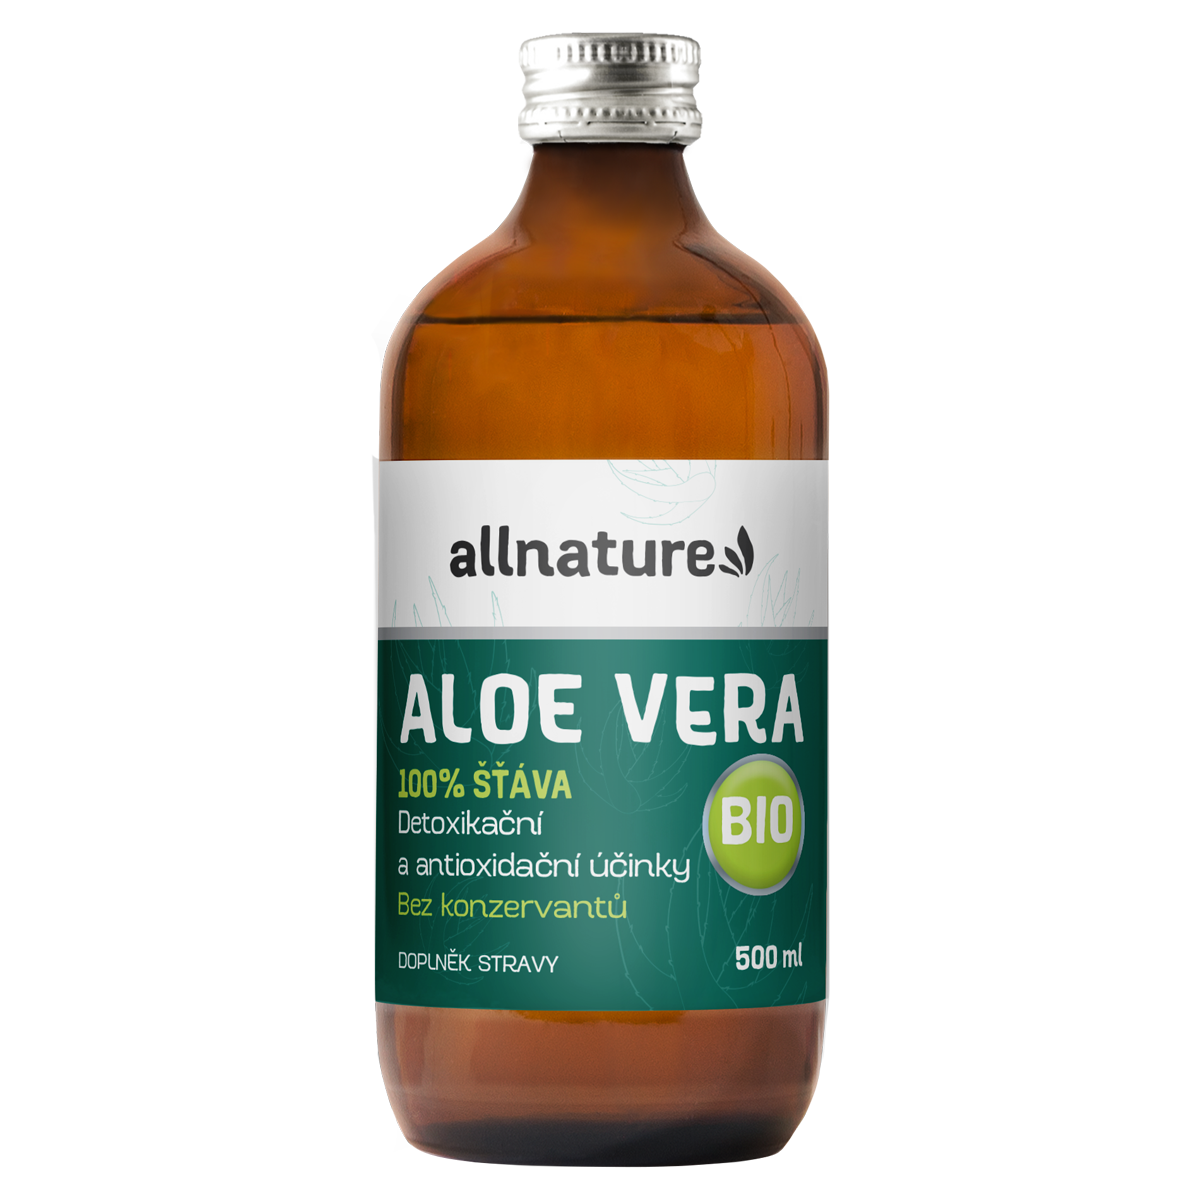 Allnature Aloe vera BIO - 500 ml - zázračný elixír z mexika